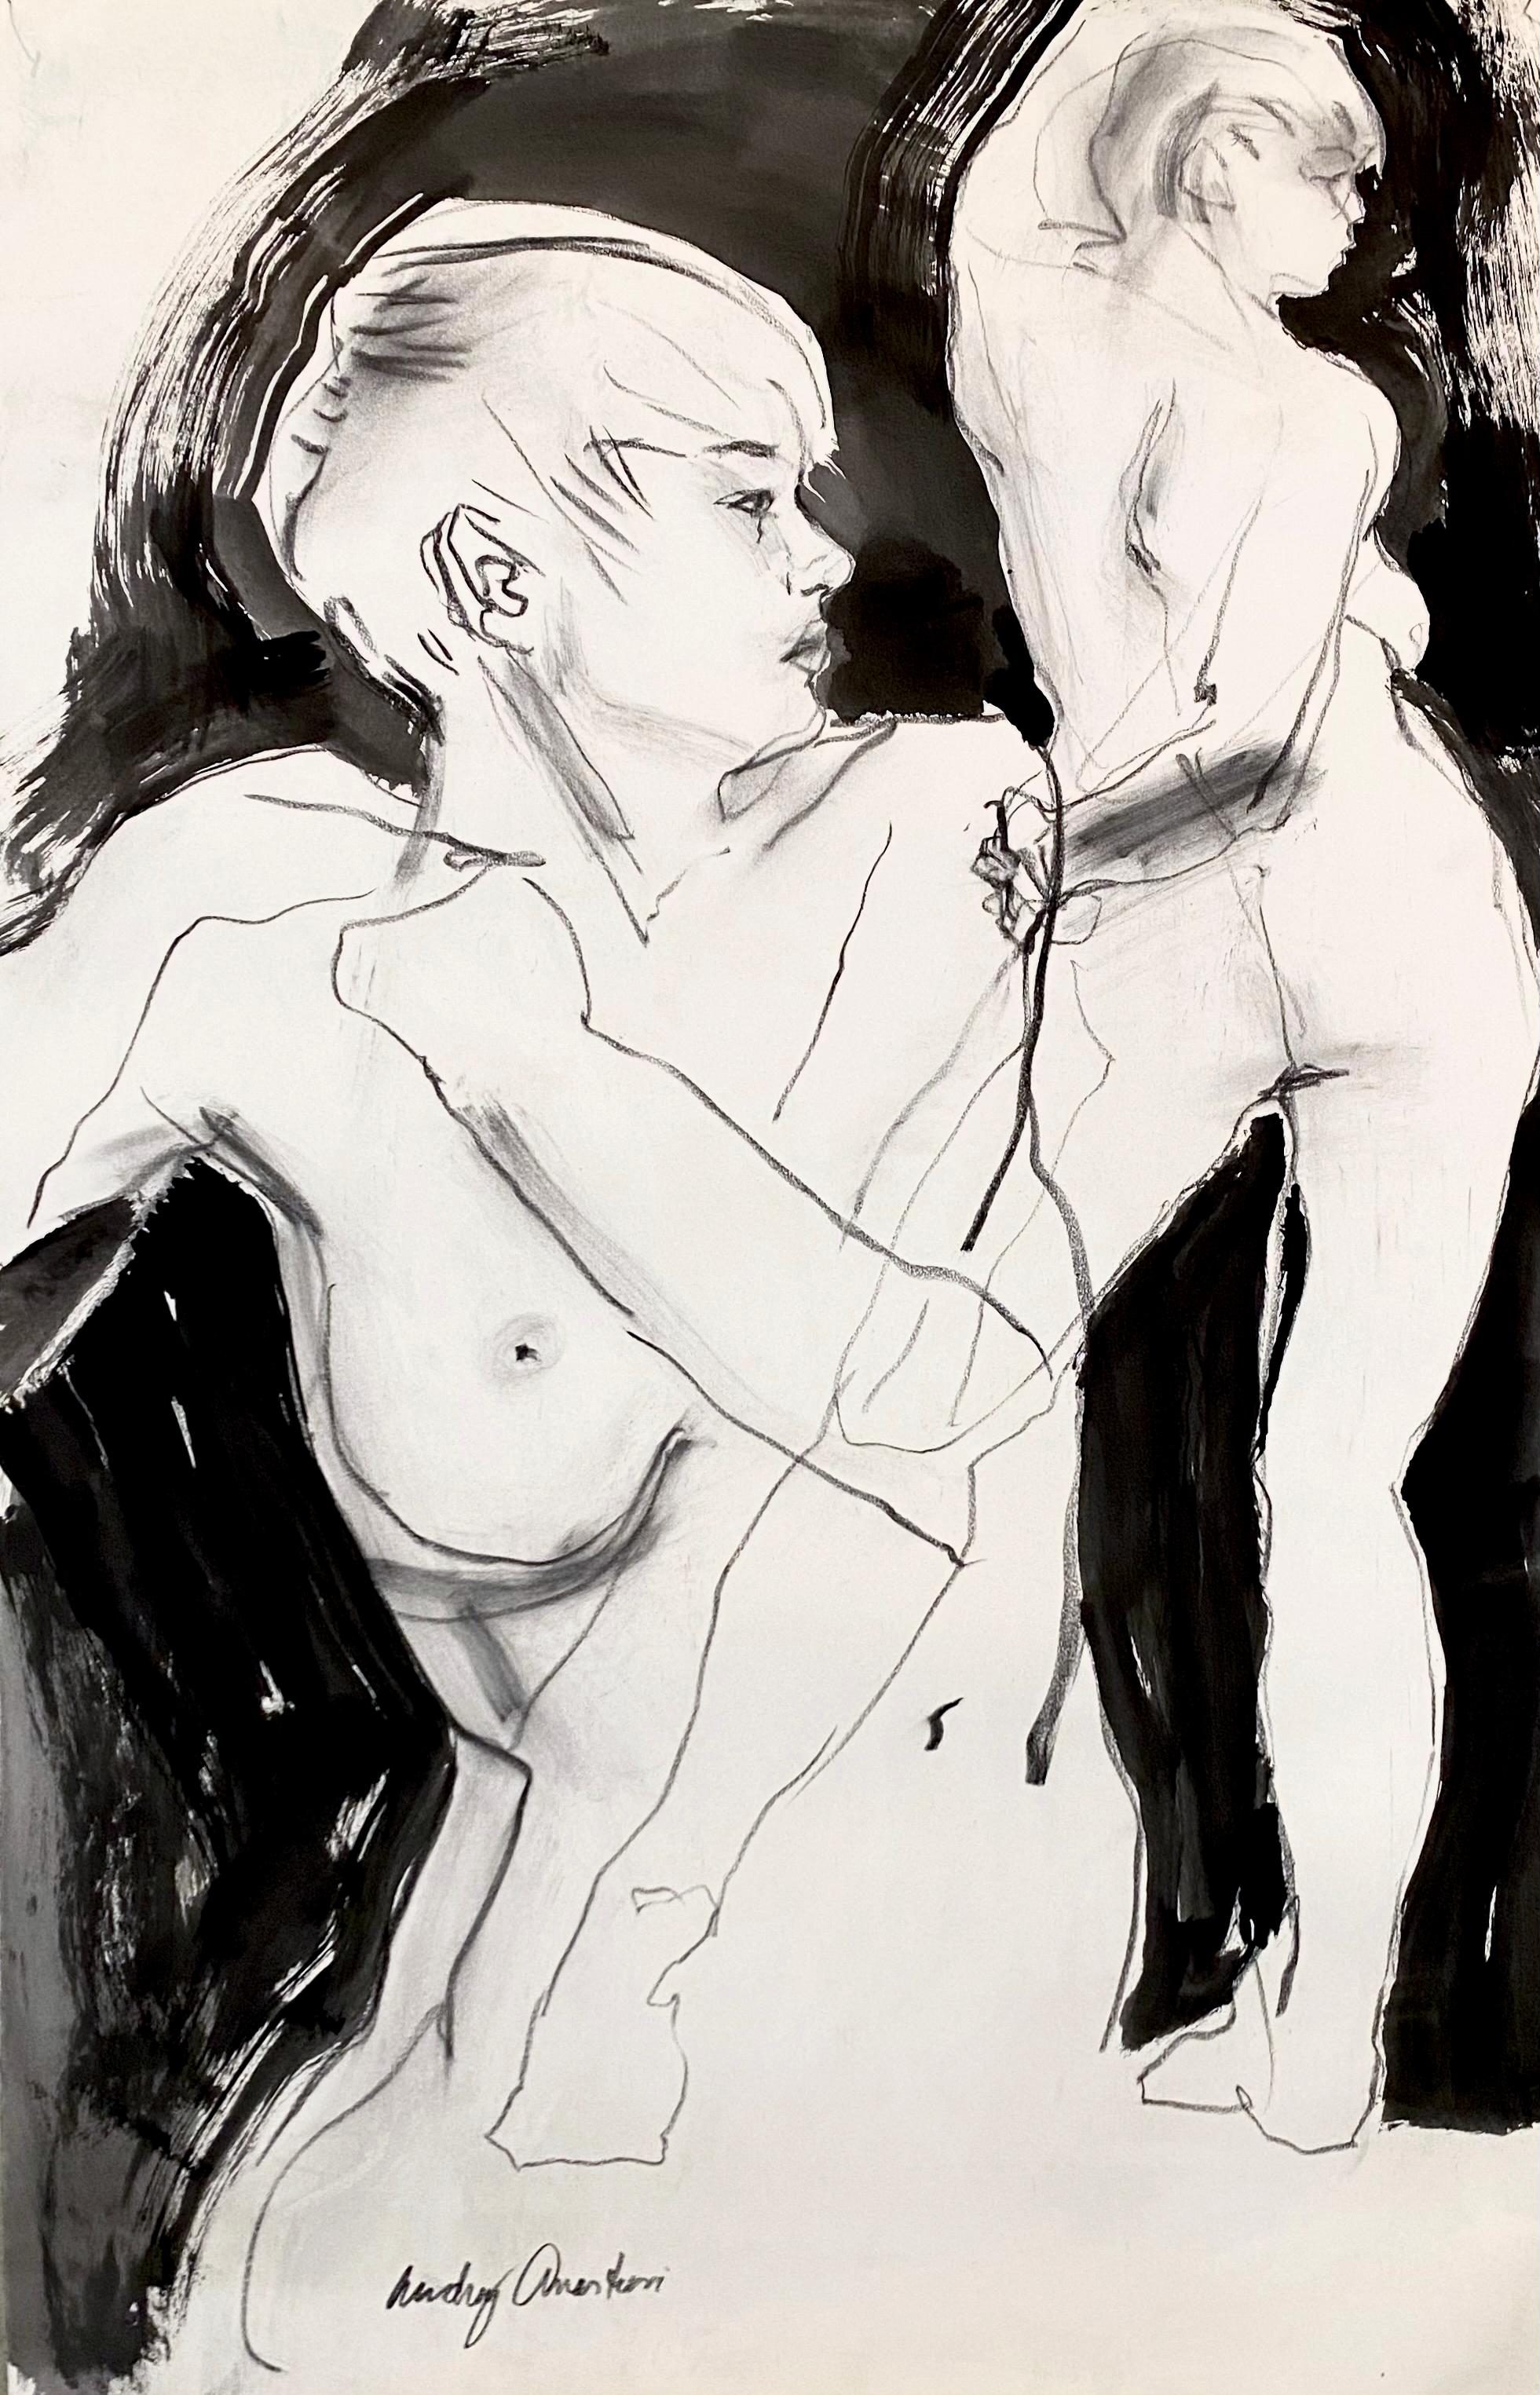 Figurative Art Audrey Anastasi - Danseuse à deux reprises, monochrome, figurative en noir et blanc, qualité d'esquisse